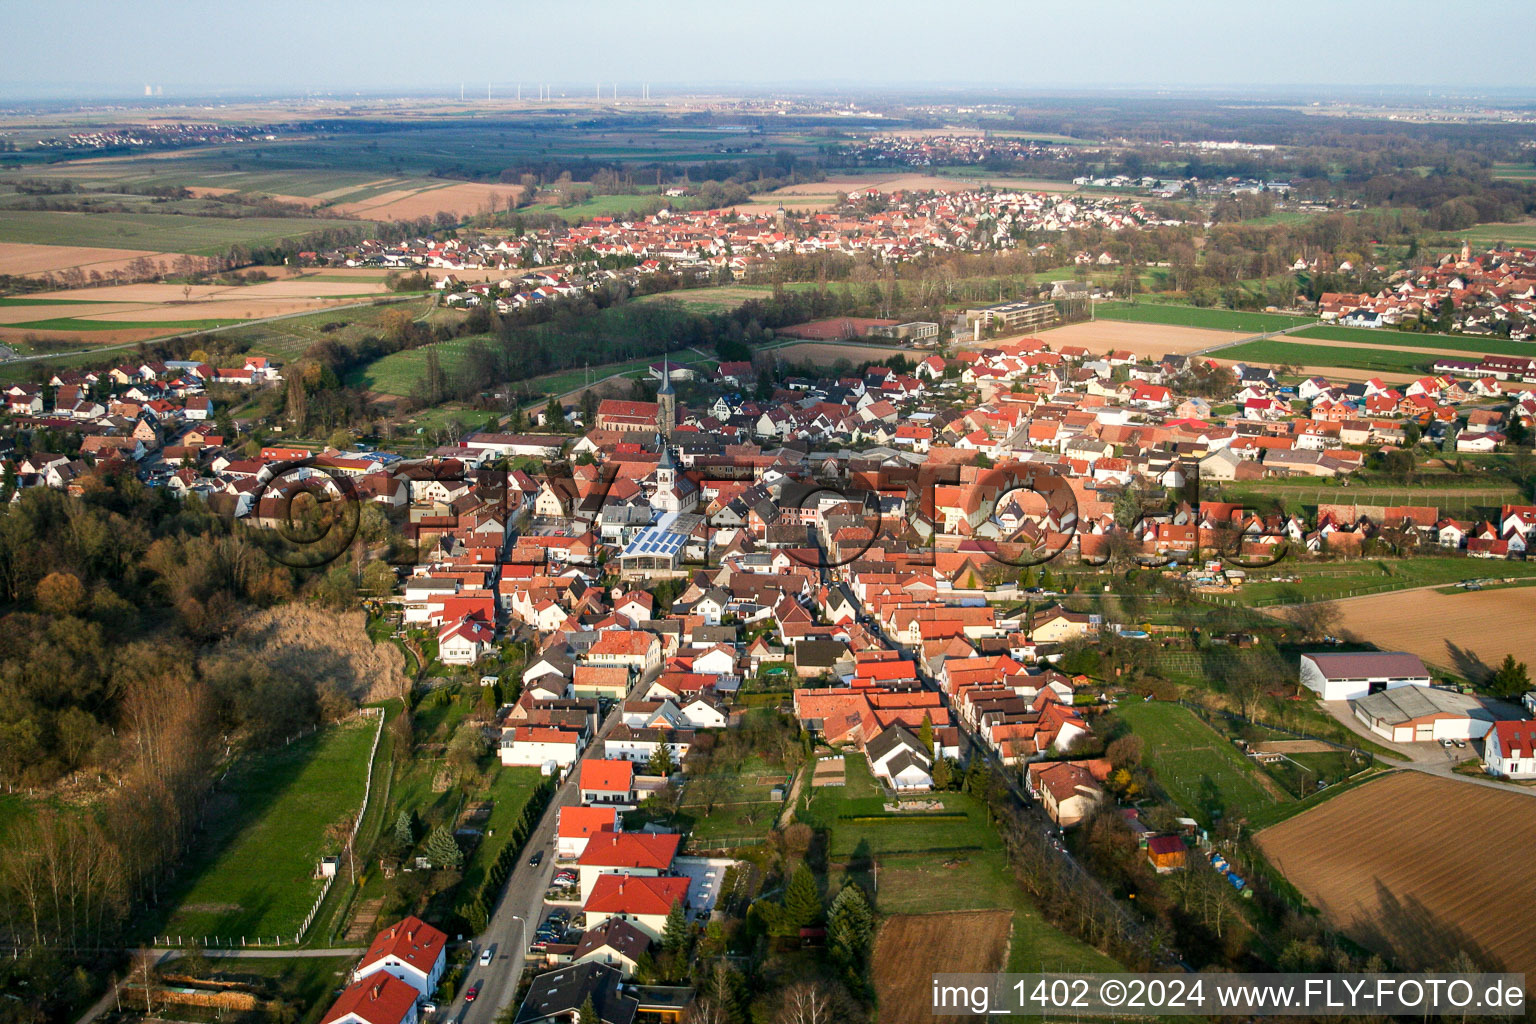 Vue aérienne de Champs agricoles et surfaces utilisables à le quartier Ingenheim in Billigheim-Ingenheim dans le département Rhénanie-Palatinat, Allemagne